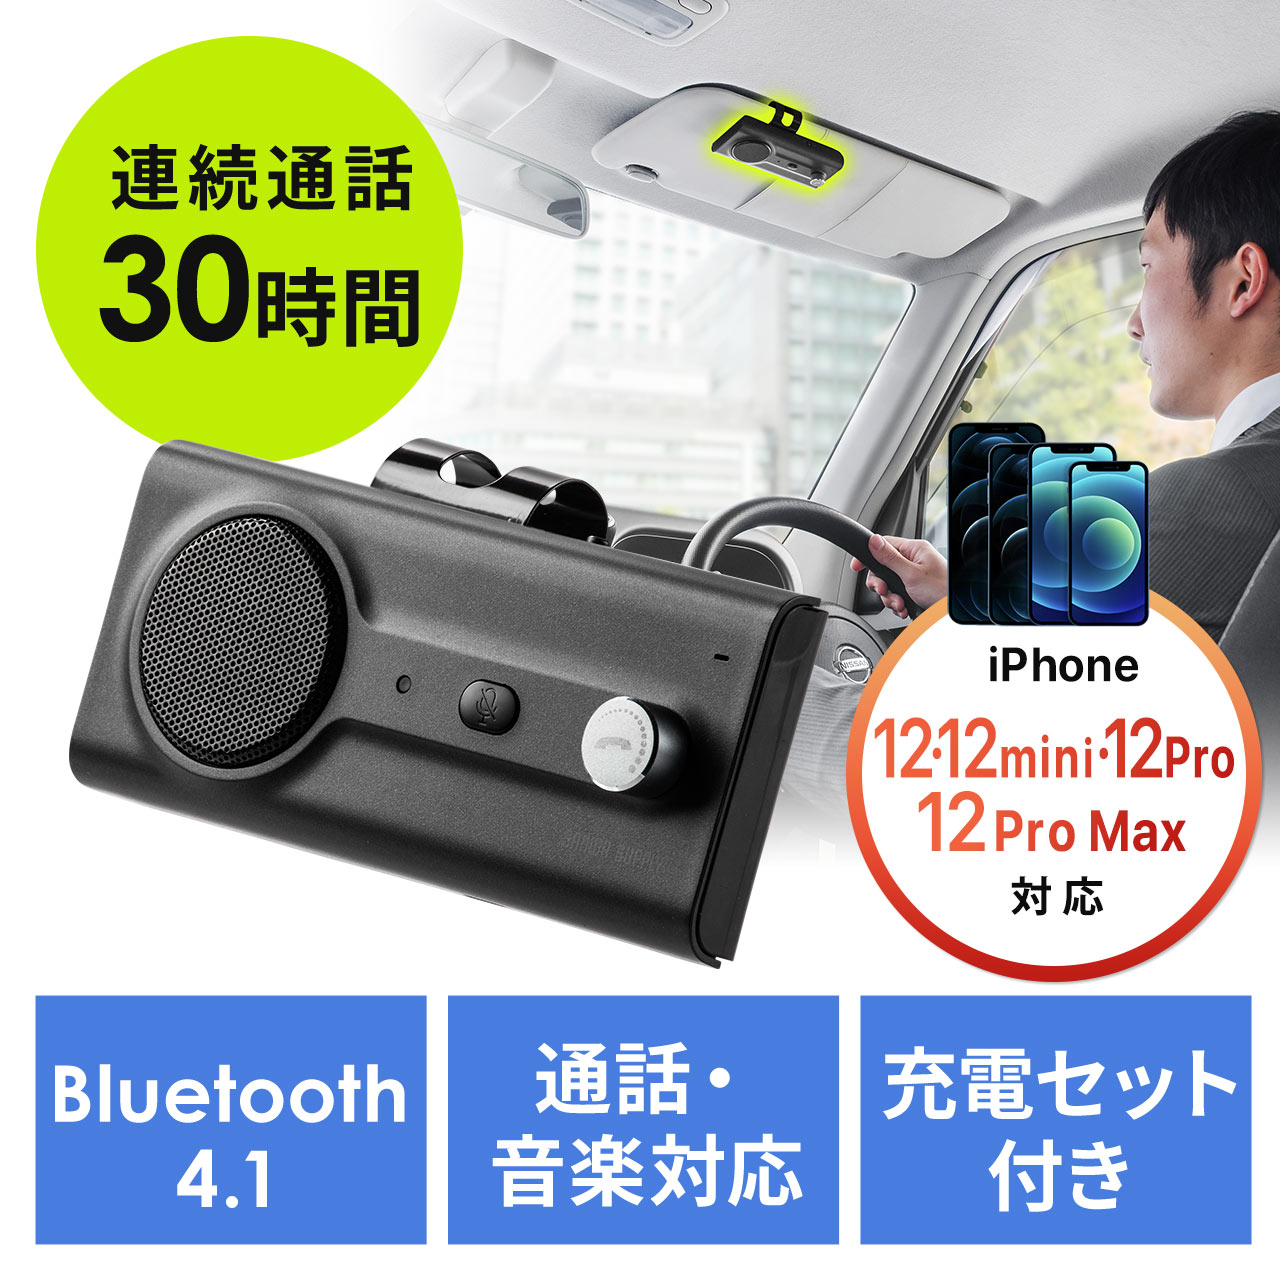 高音質通話 ハンズフリー 車載用 通話 スピーカー 車 スマホ Bluetooth 車載用品 車中泊 配線不要 電話 安全 2台接続可能 想像を超えての